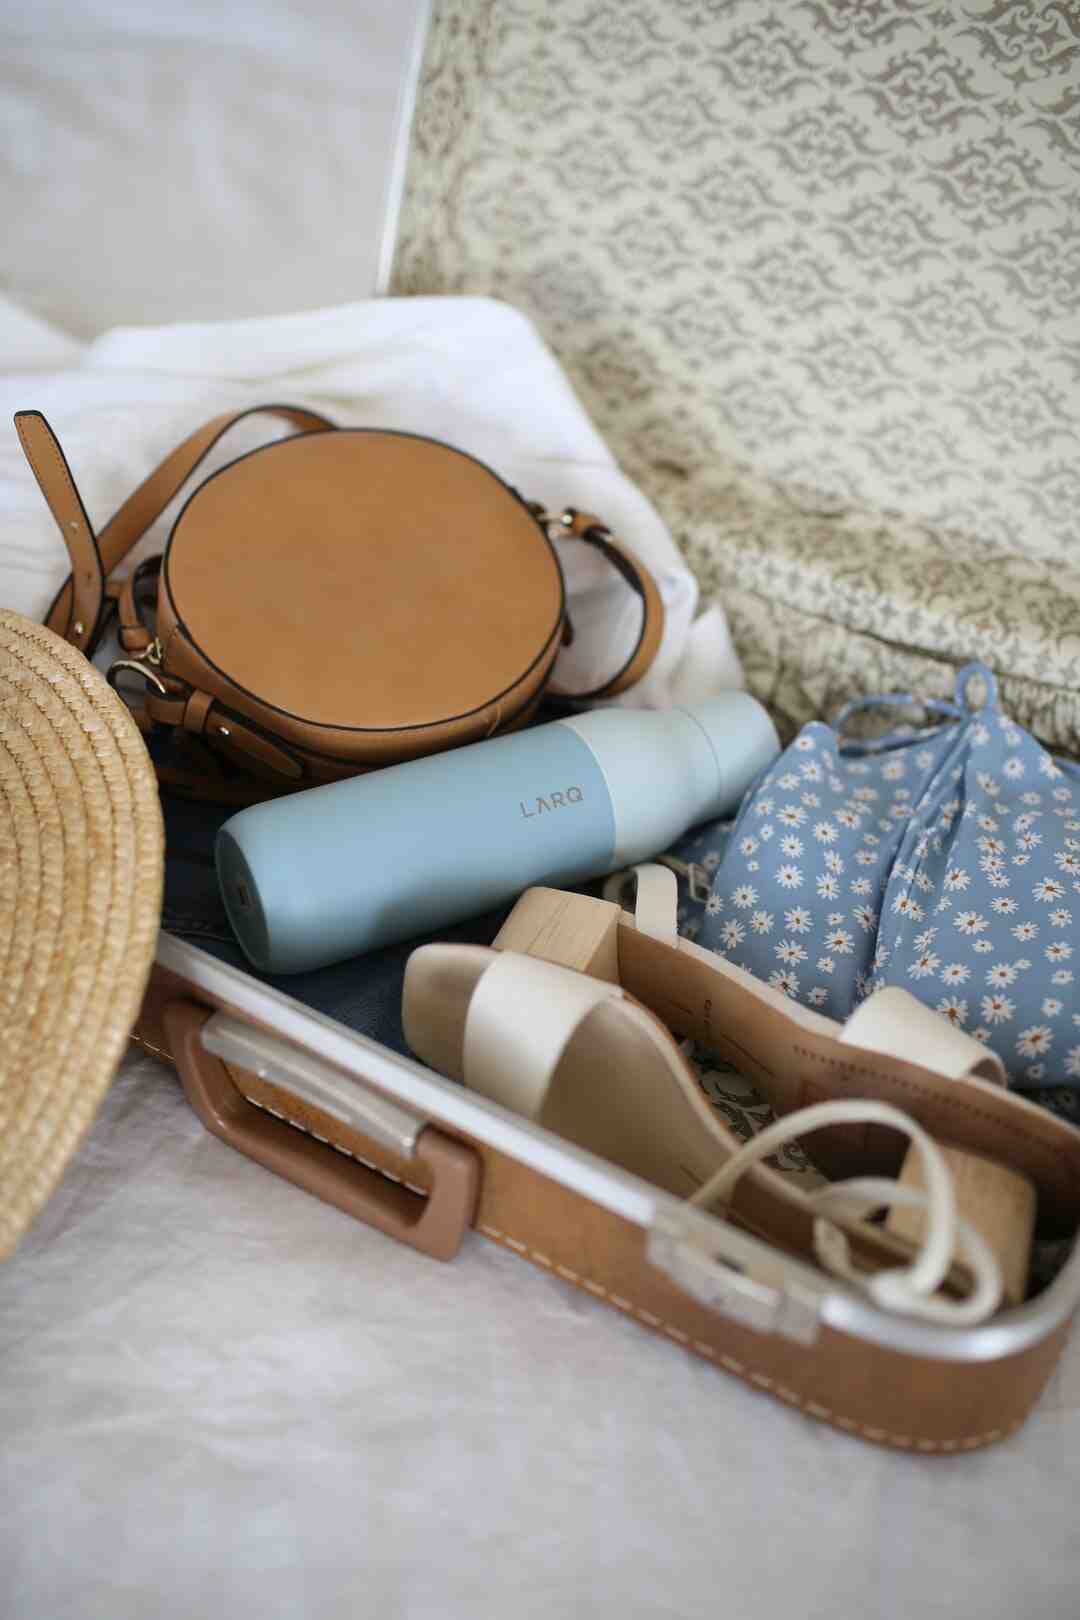 सूटकेस में कपड़े कैसे रखें?